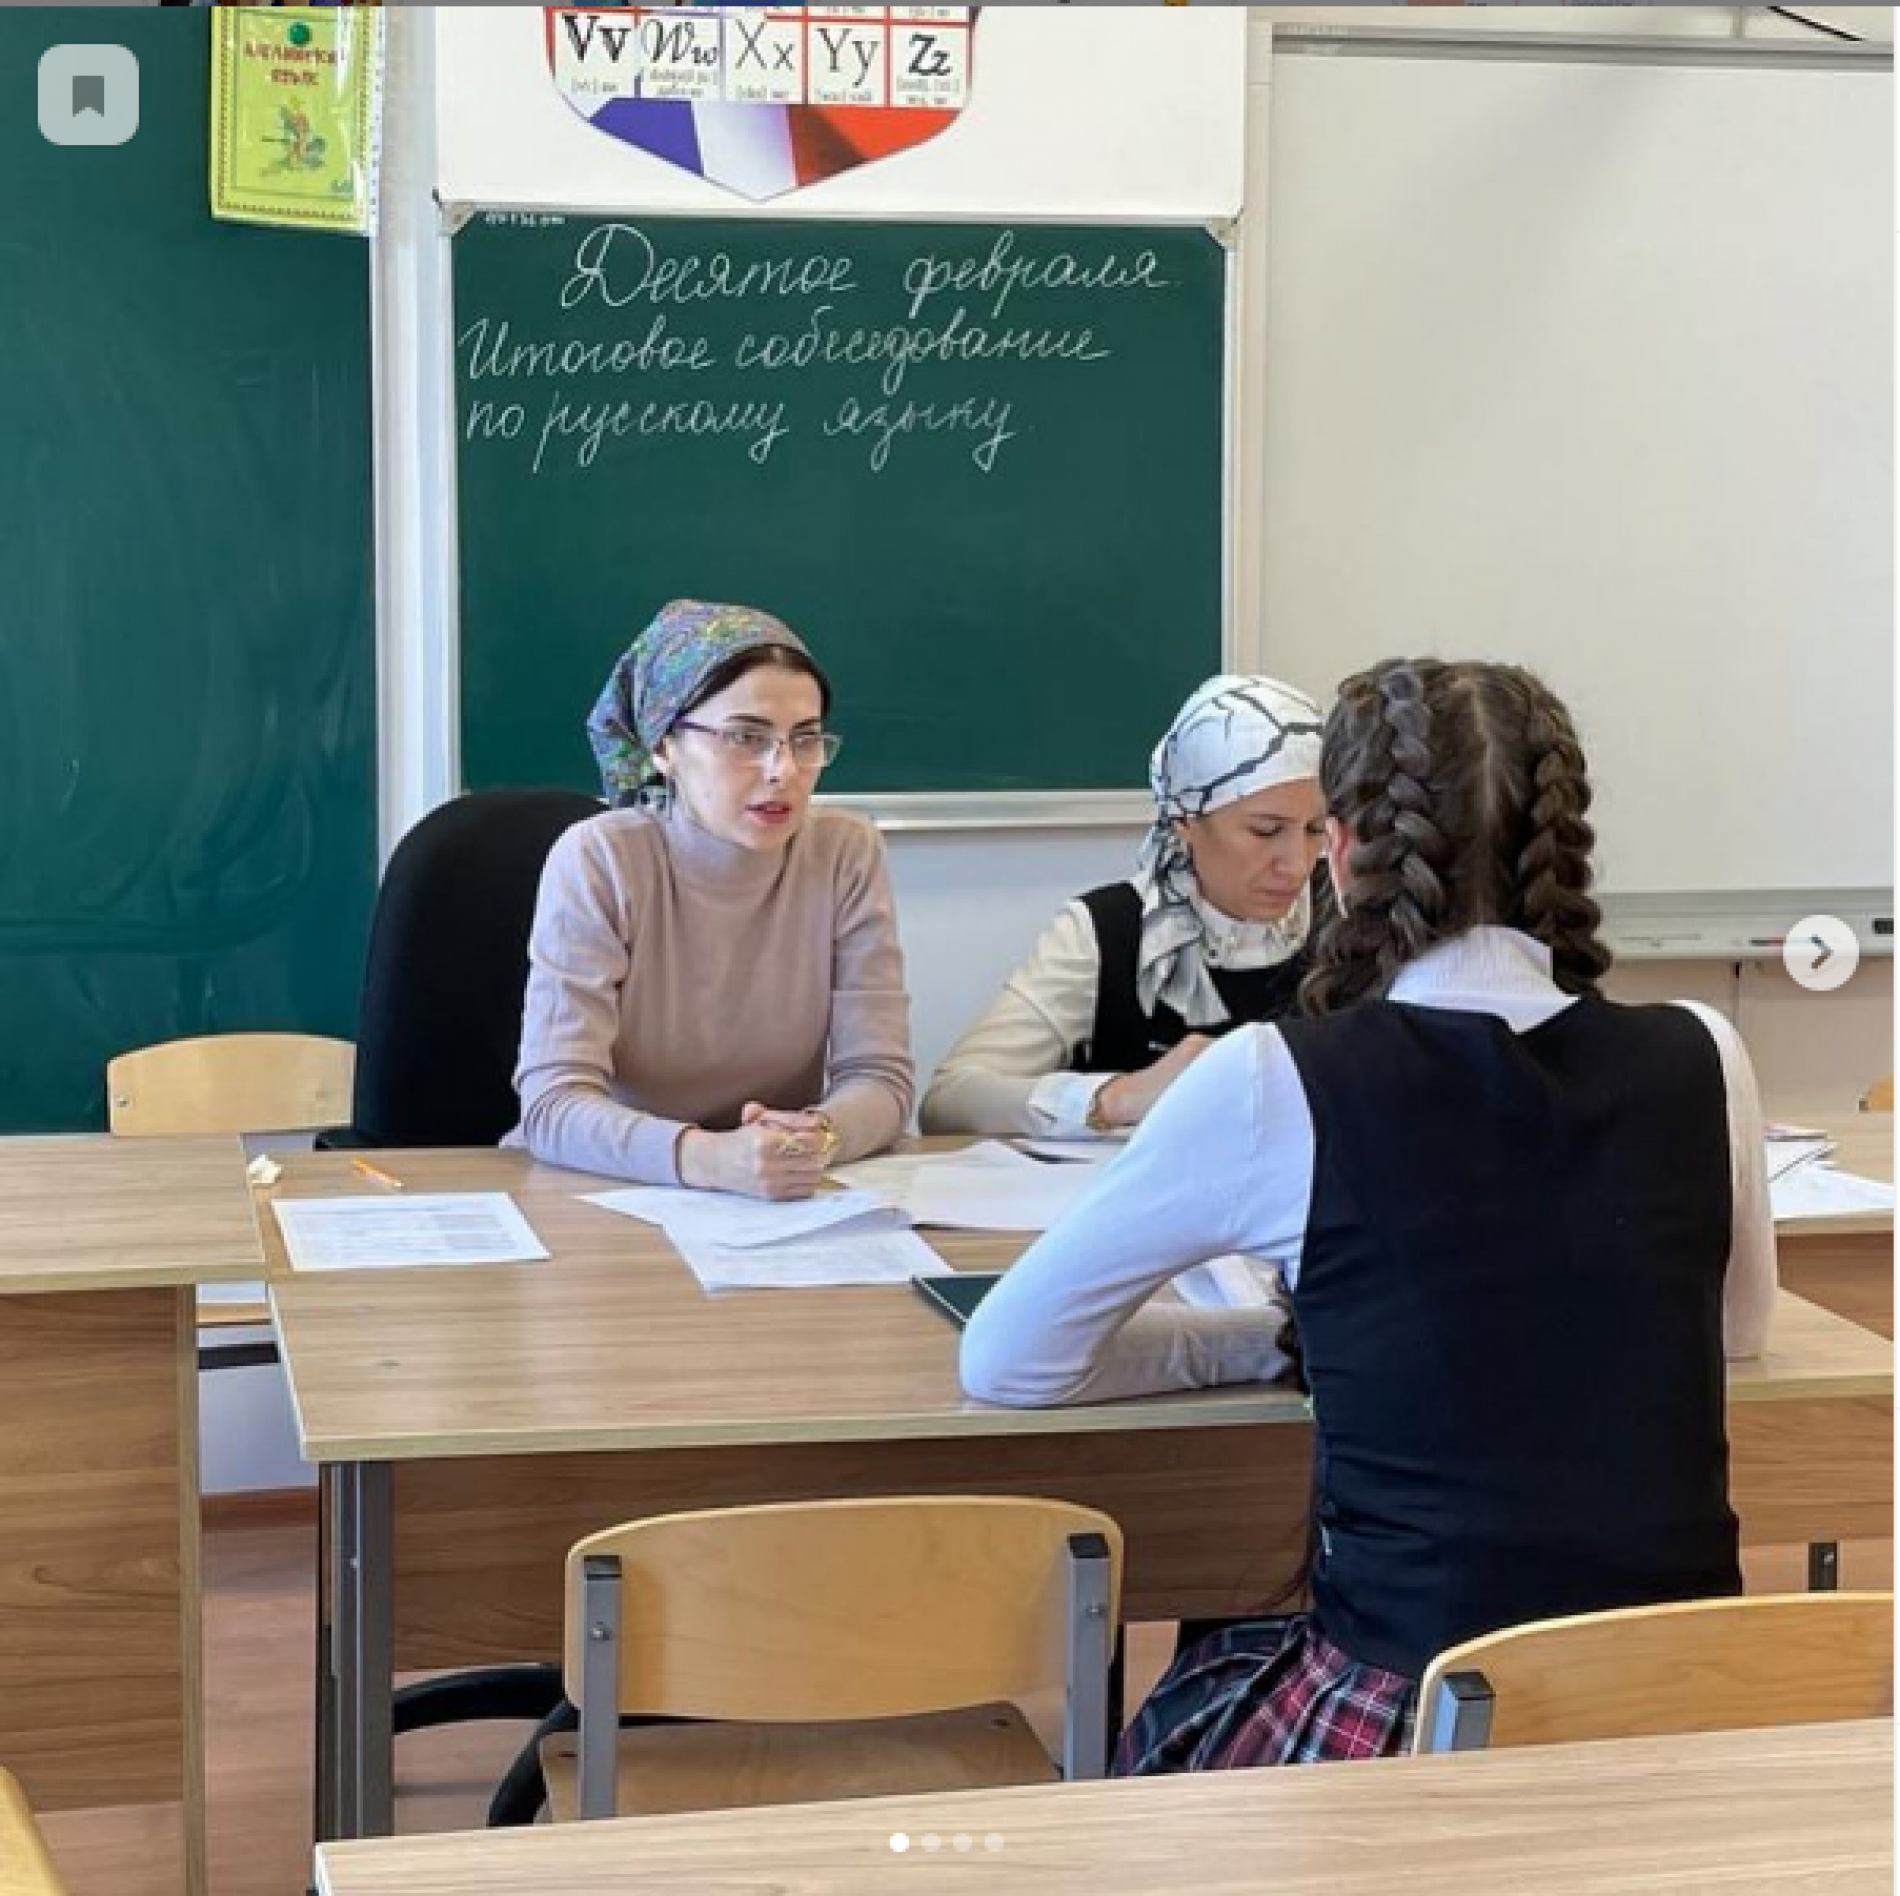 Сегодня, 10 февраля 2021 года в образовательных организациях Республики Ингушетия учащиеся 9-х классов проходят итоговое собеседование по русскому языку.